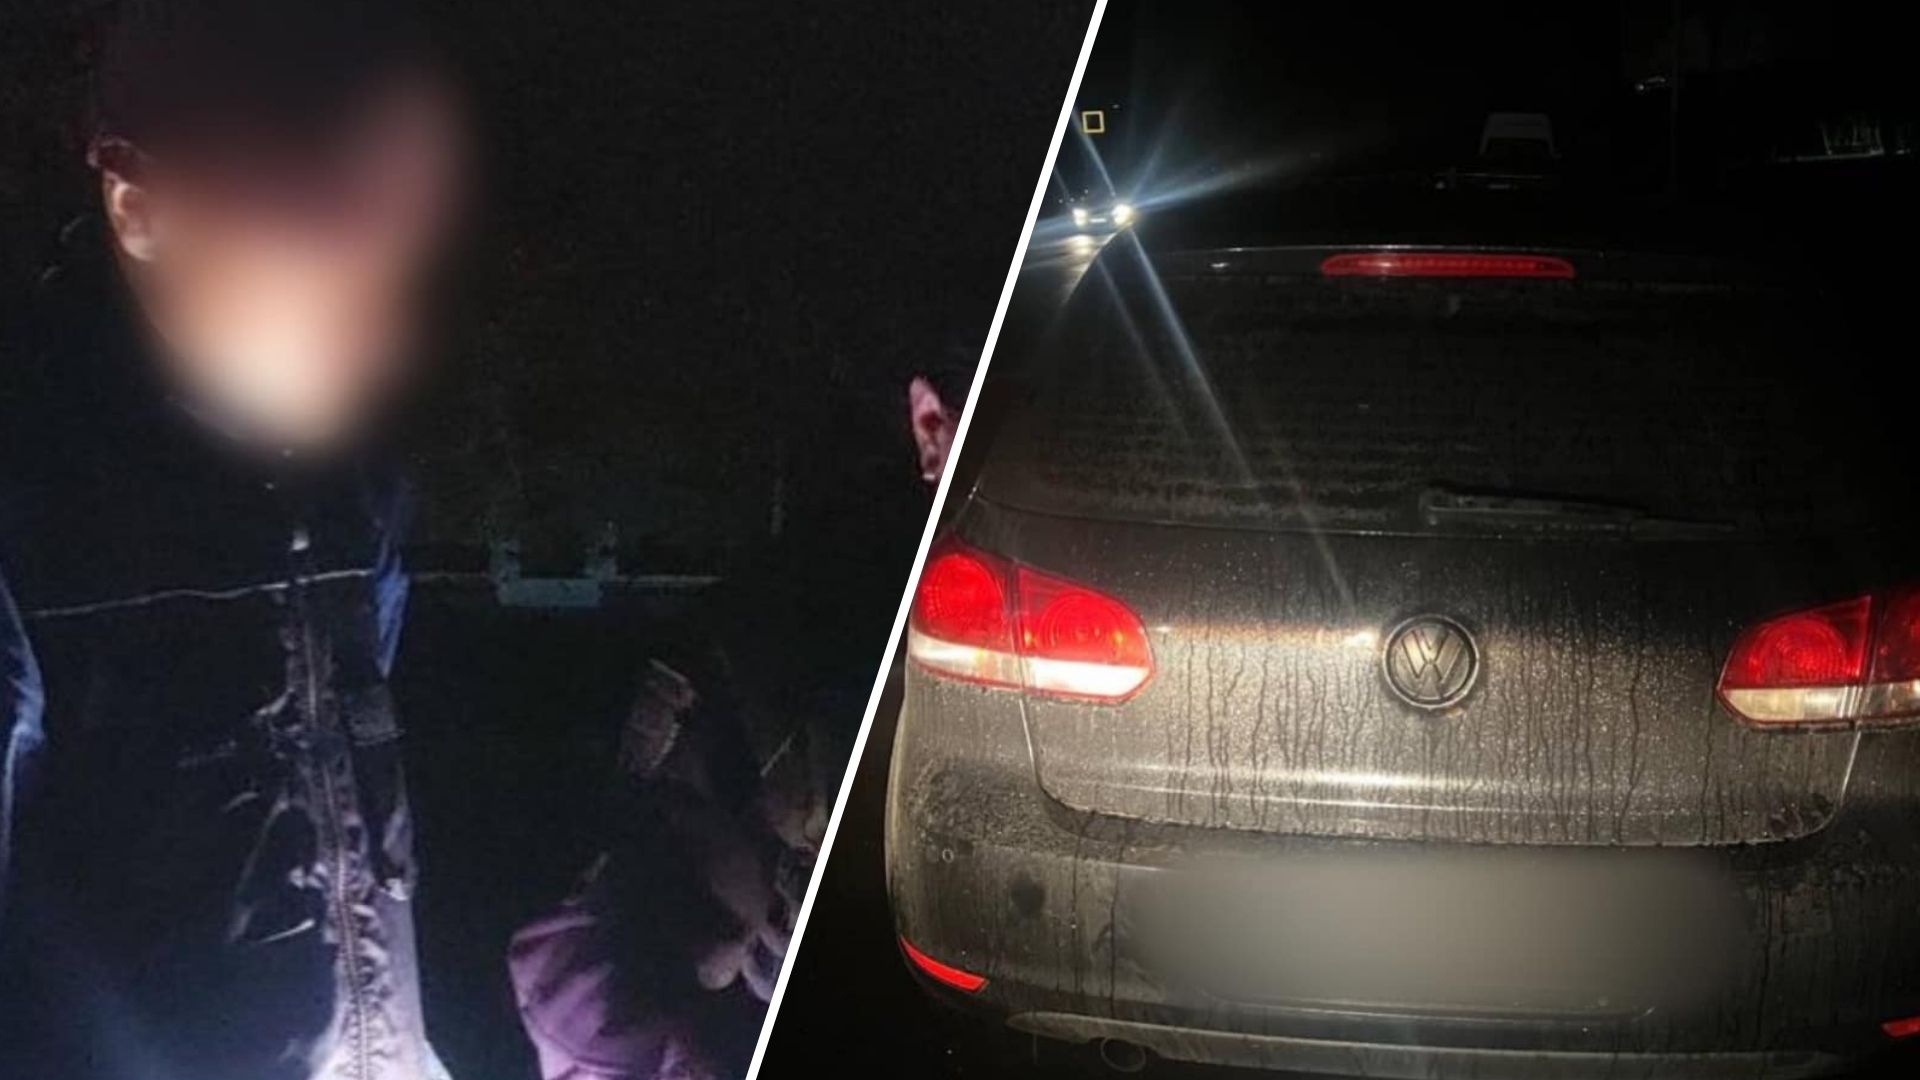 Сьогодні, опівночі, на проспекті Свободи в Ужгороді, патрульна поліція зупинила водія Volkswagen за порушення ПДР.